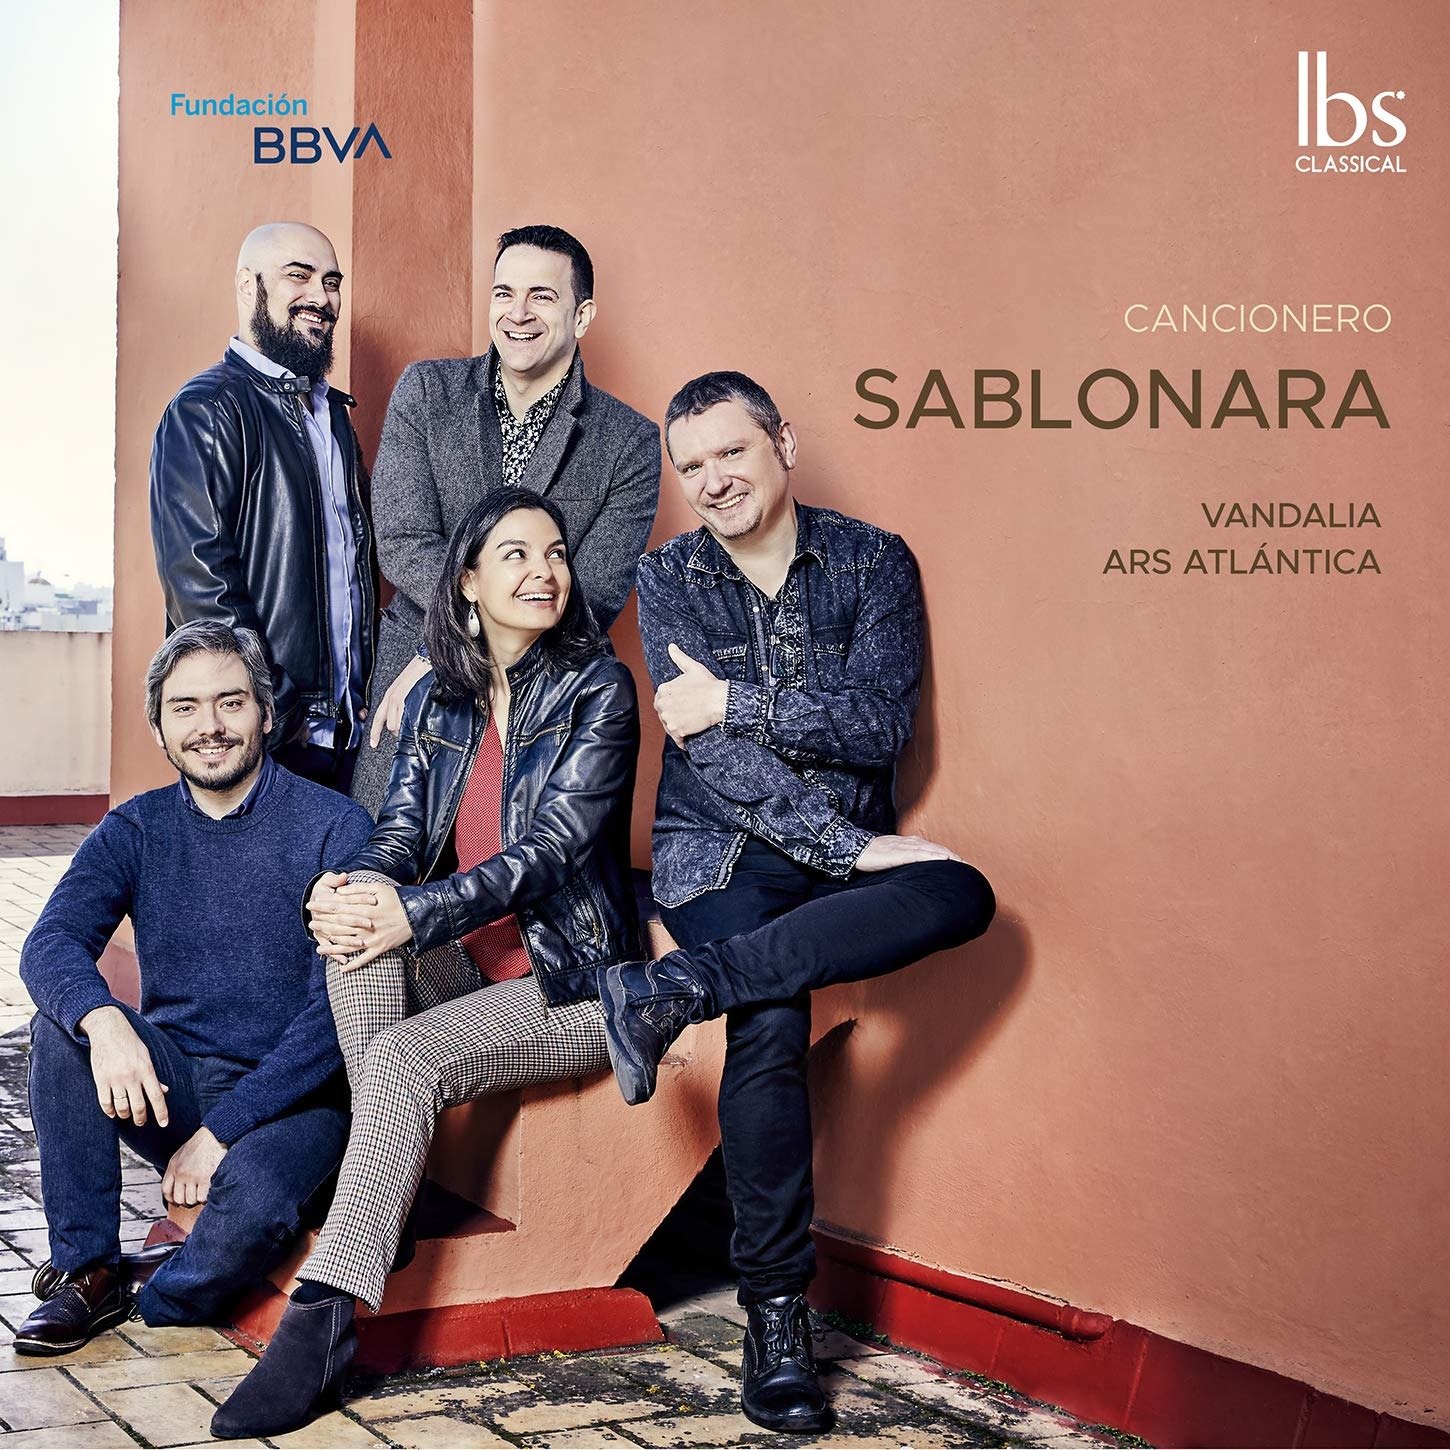 CD Shop - VANDALIA/ARS ATLANTICA CANCIONERO DE LA SABLONARA: SPANISH VOCAL BAROQUE